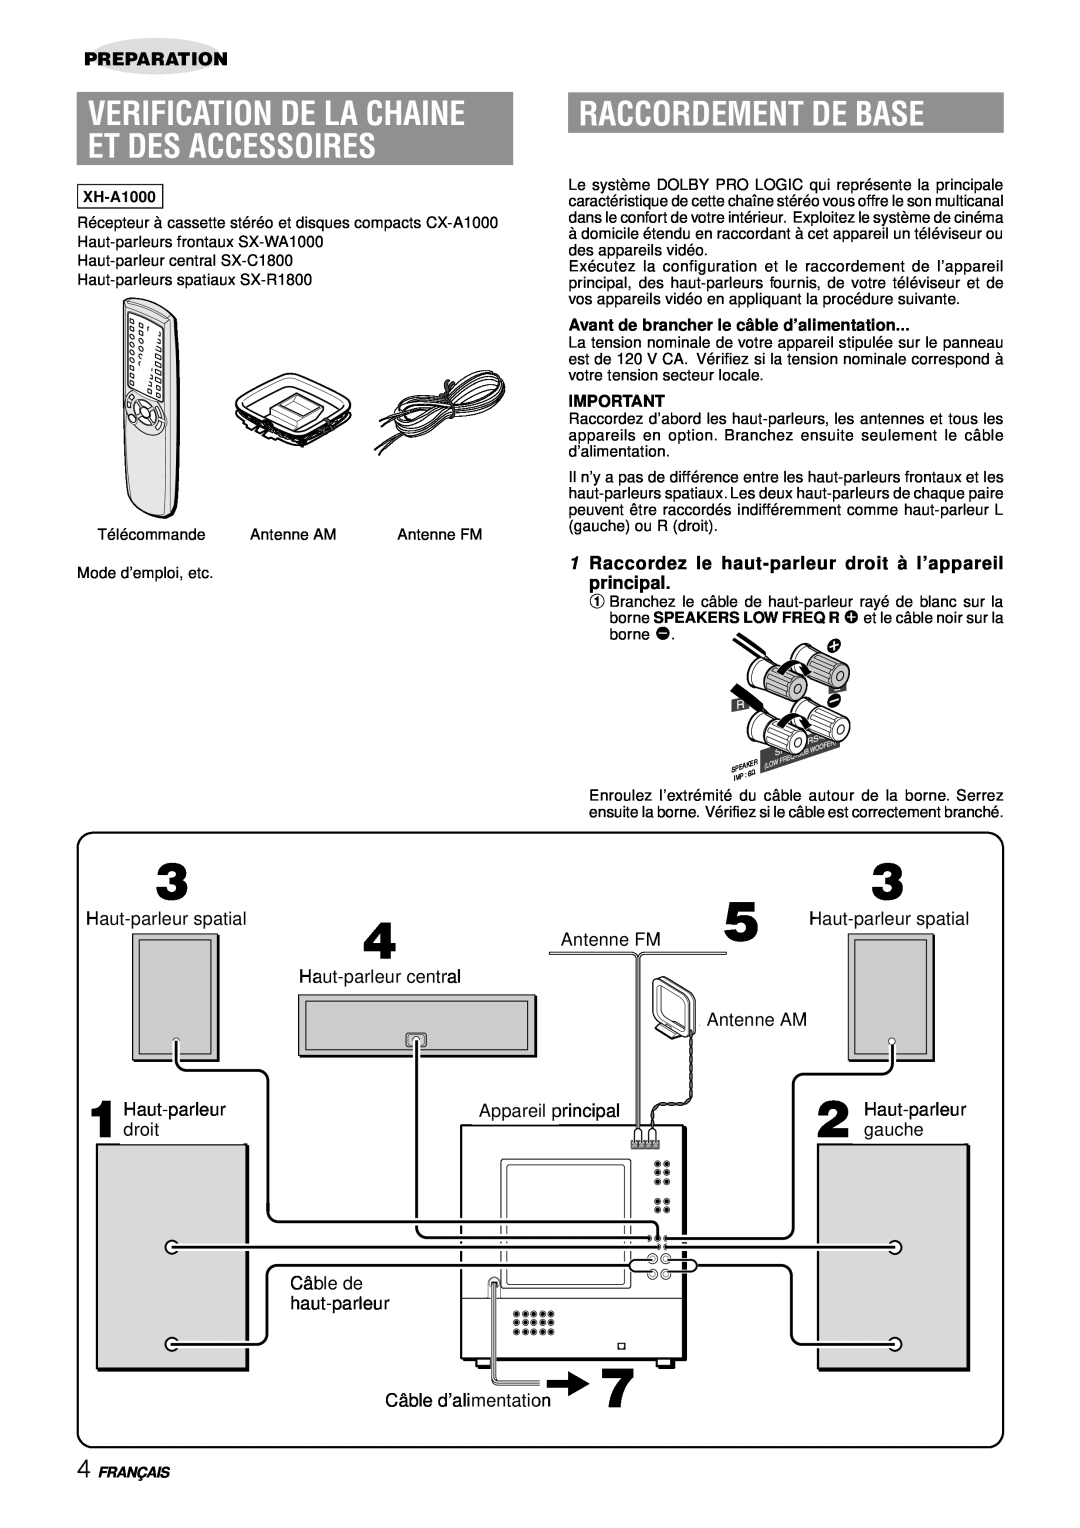 Aiwa XH-A1000 manual Verification De La Chaine Et Des Accessoires, Raccordement De Base, Preparation 